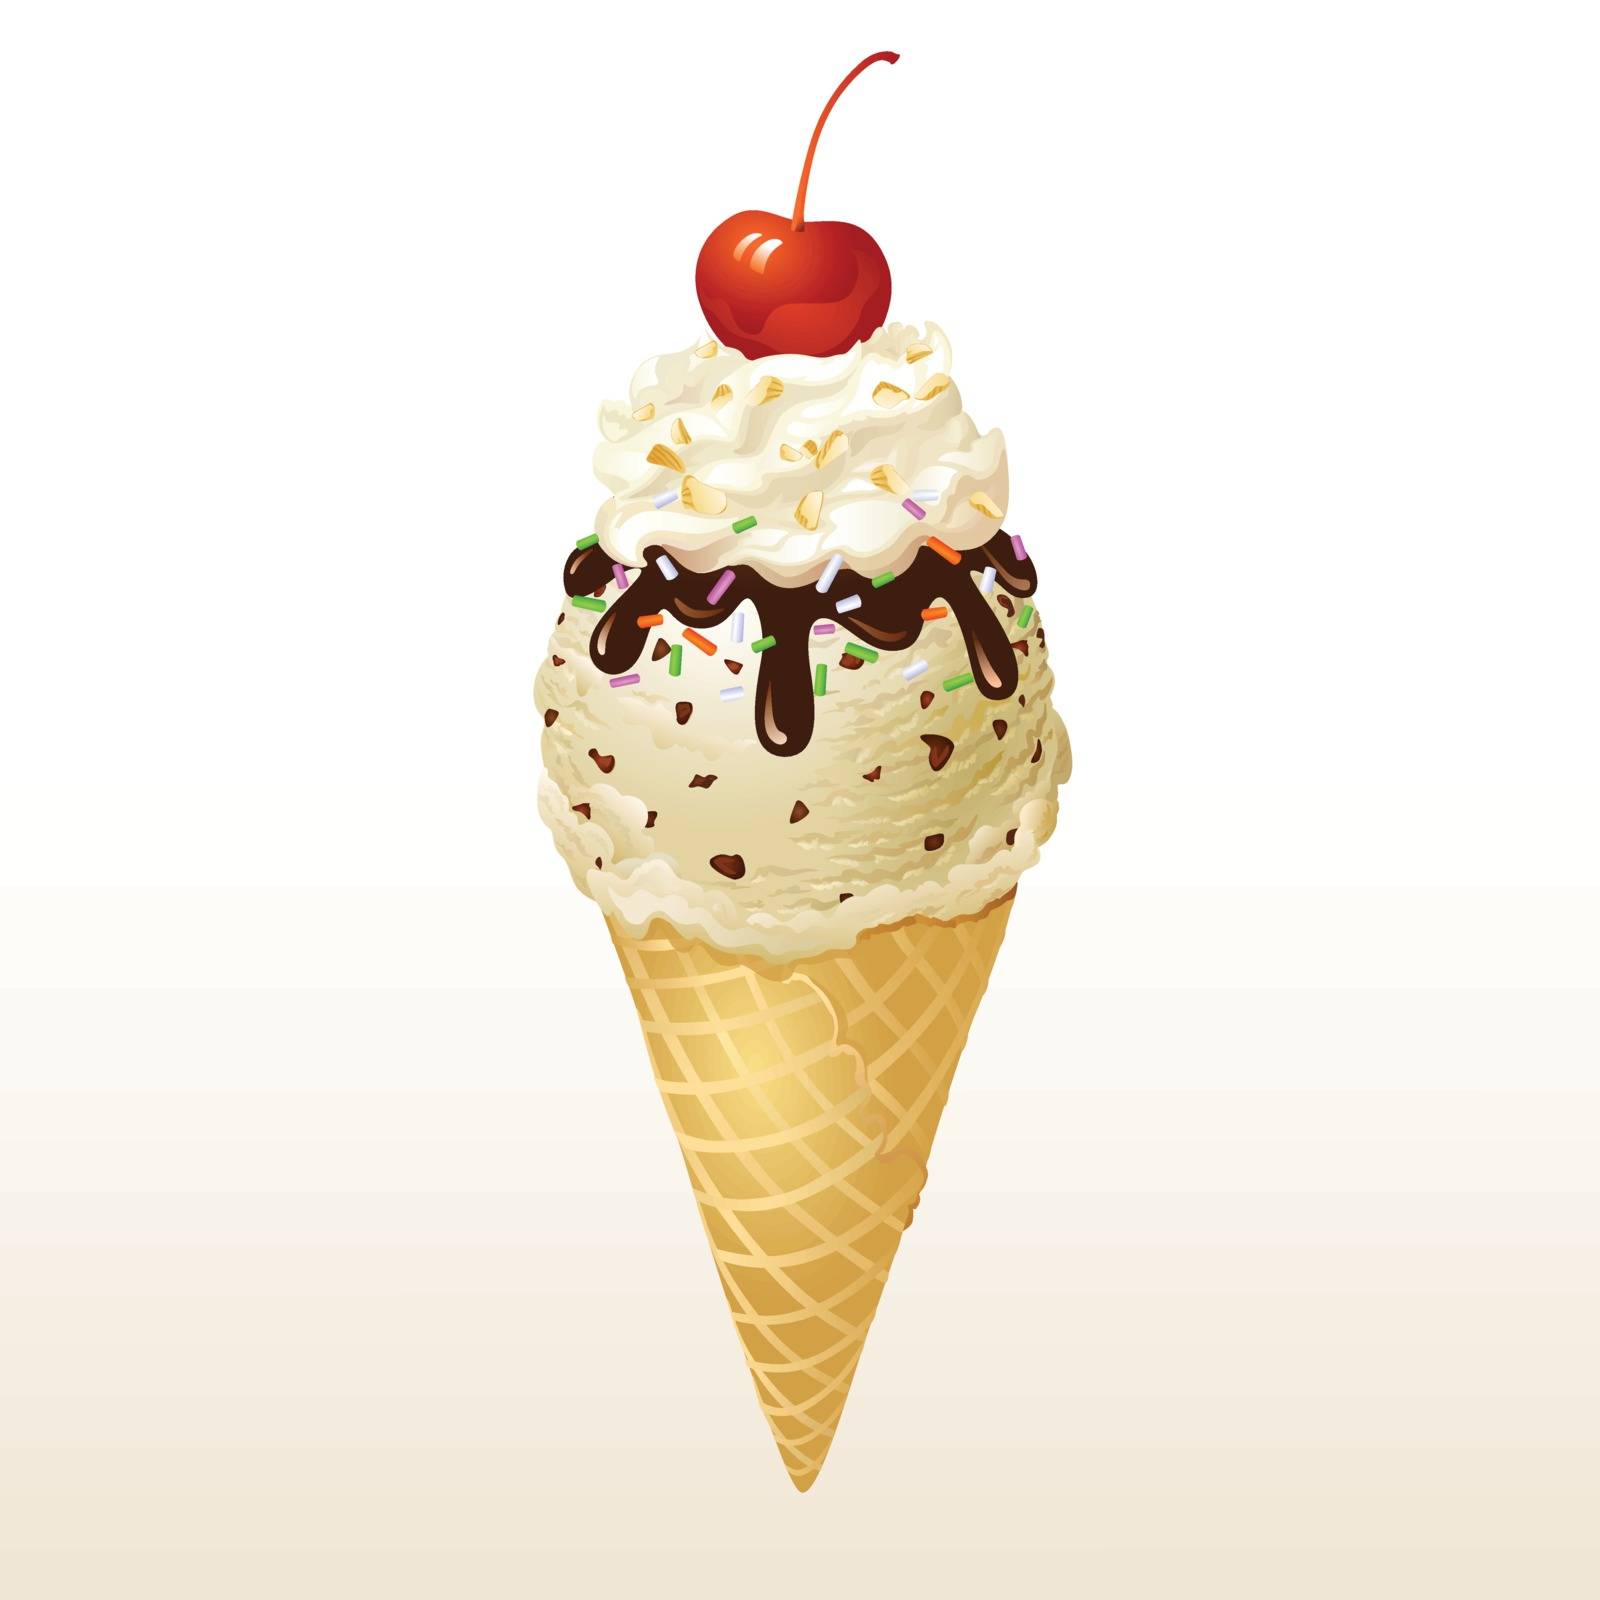 Vanilla Ice cream cone by Amornism